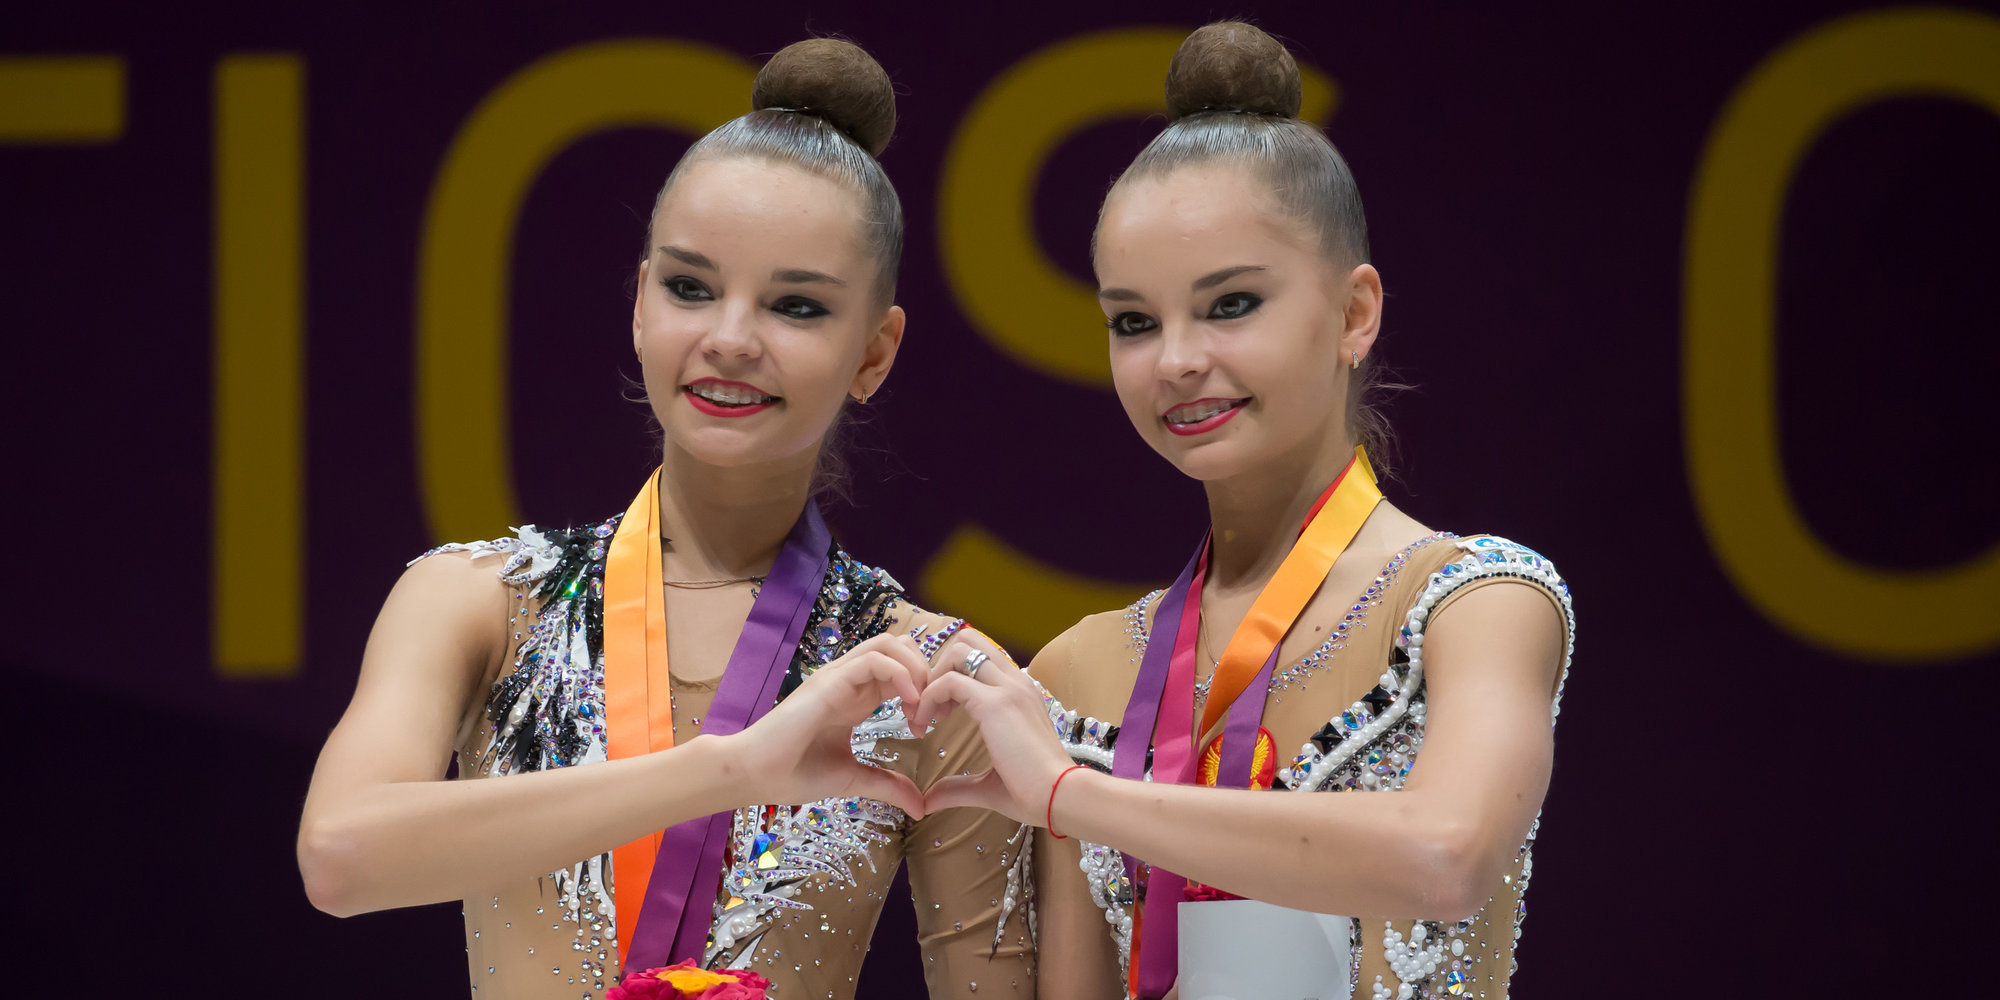 Сборная России выиграла общий зачет ЧМ-2018 по художественной гимнастике